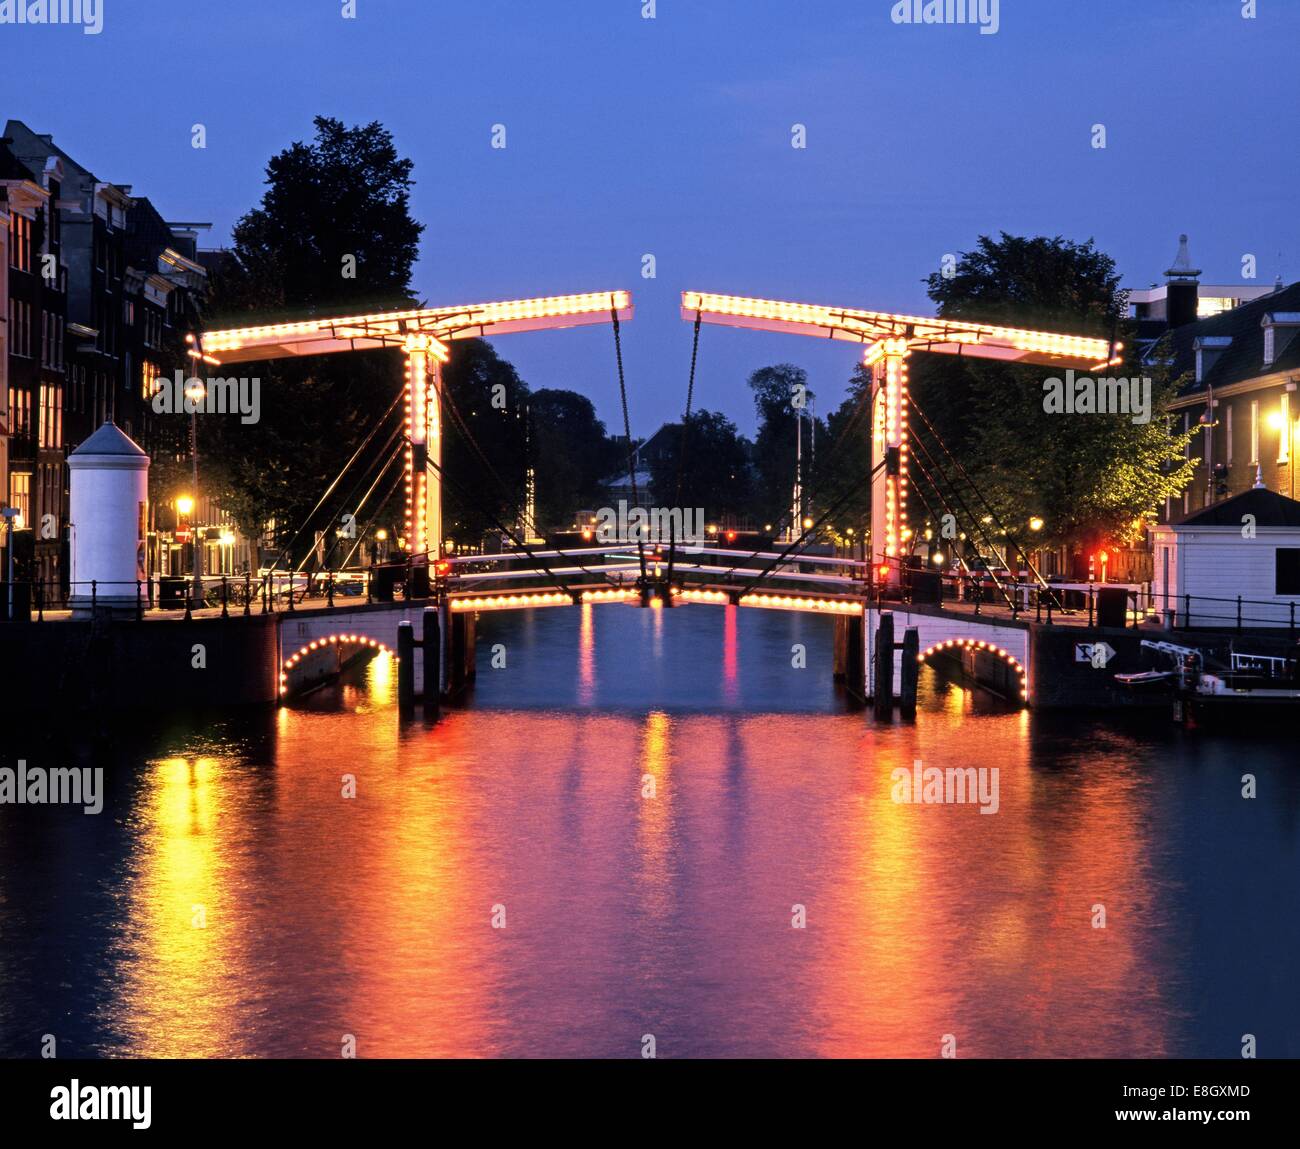 Magere Brug (pont maigre) au crépuscule & Rivière Amstel, Amsterdam, Hollande, Pays-Bas, Europe Banque D'Images